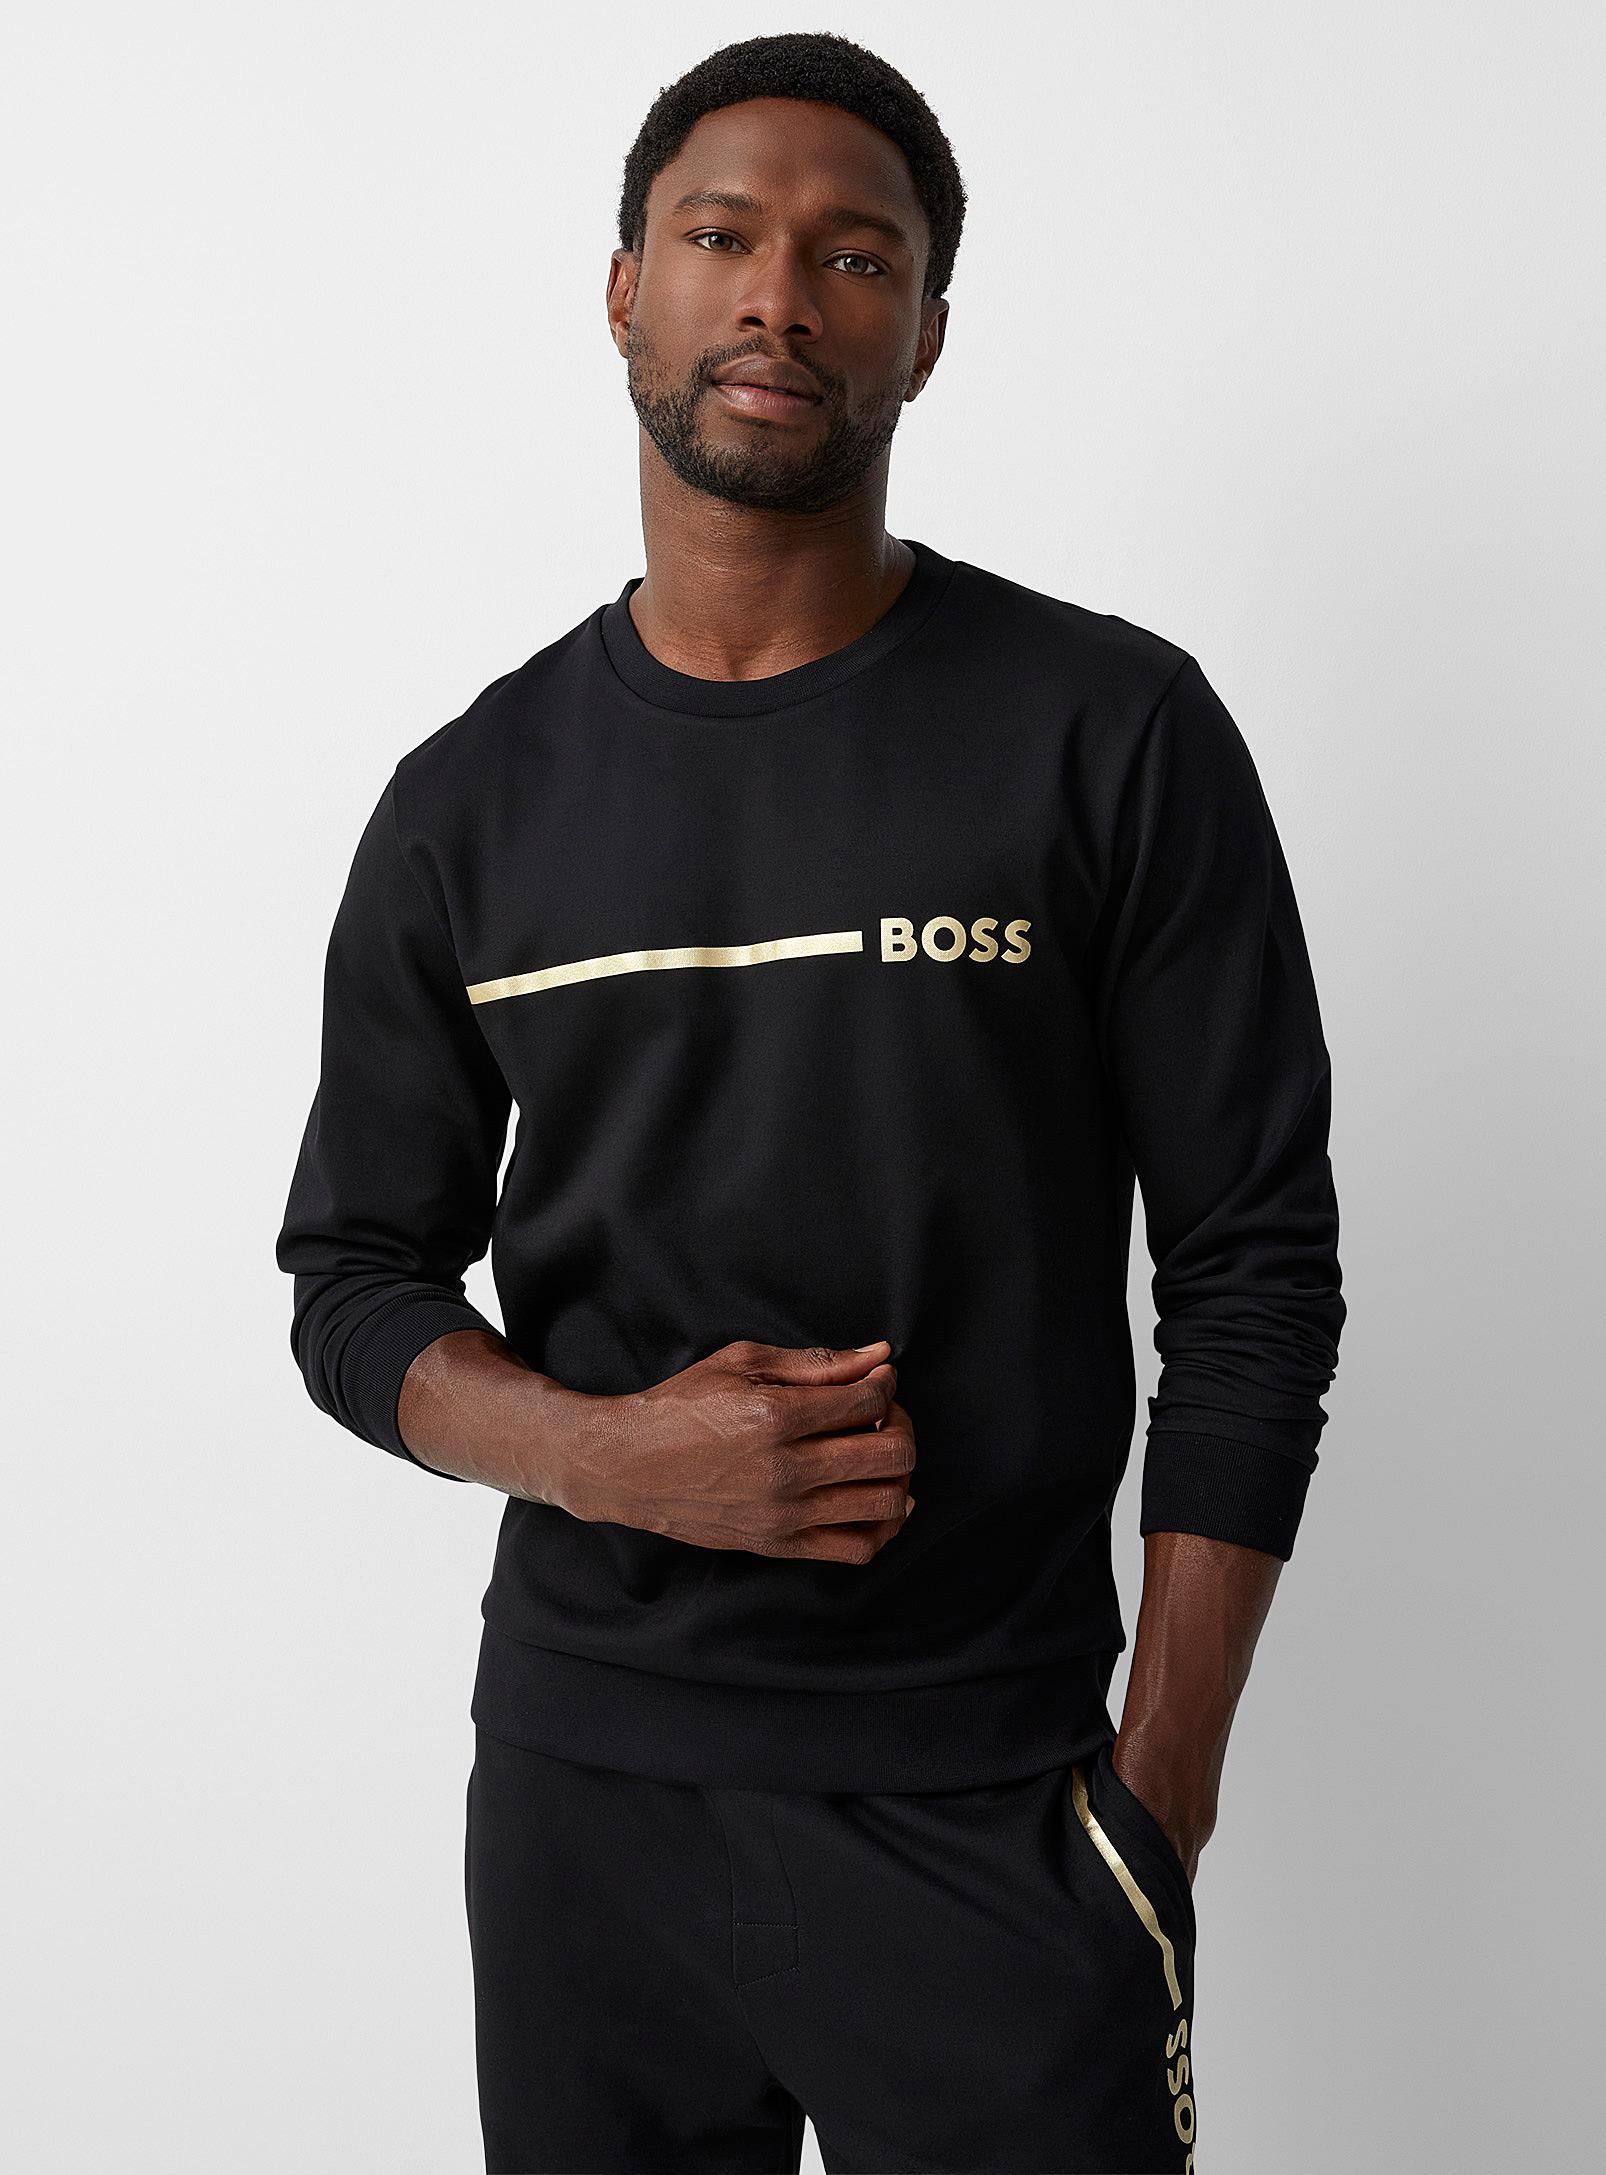 BOSS by HUGO BOSS Gold Logo Lounge Sweatshirt in Black for Men | Lyst